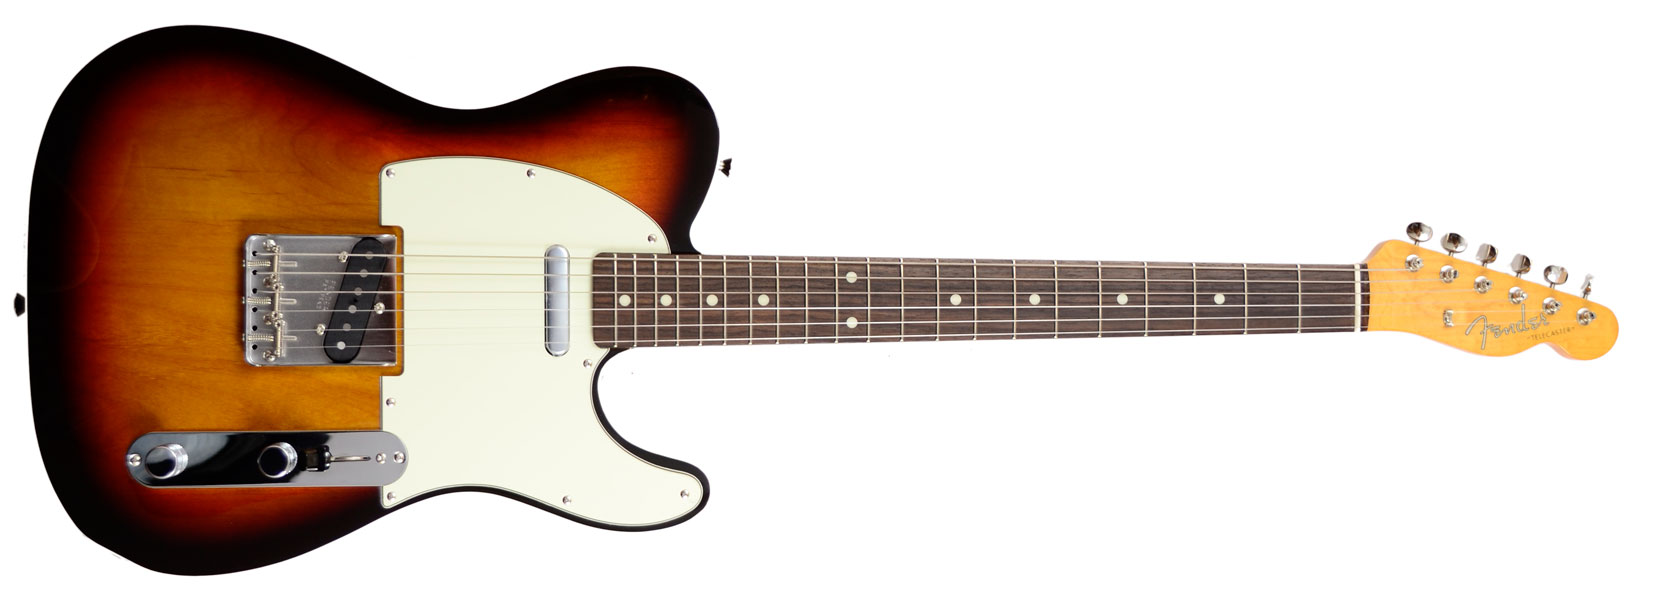 Fender Japan '62 Telecaster Custom 2014 3 Tone Sunburst Guitar For